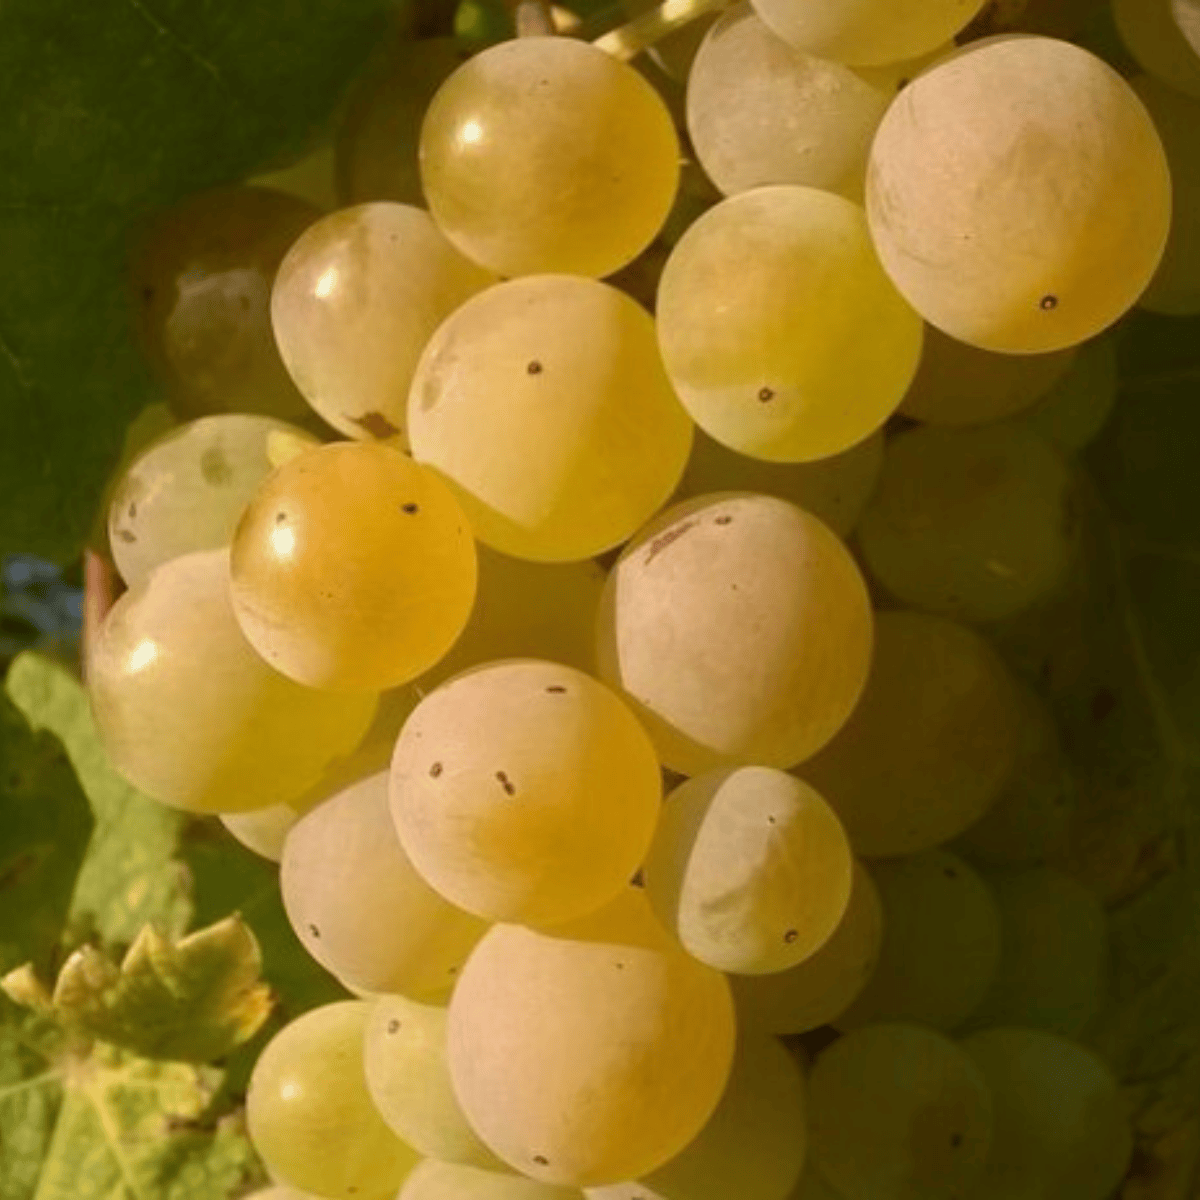 Winorośl winogrona Bianca